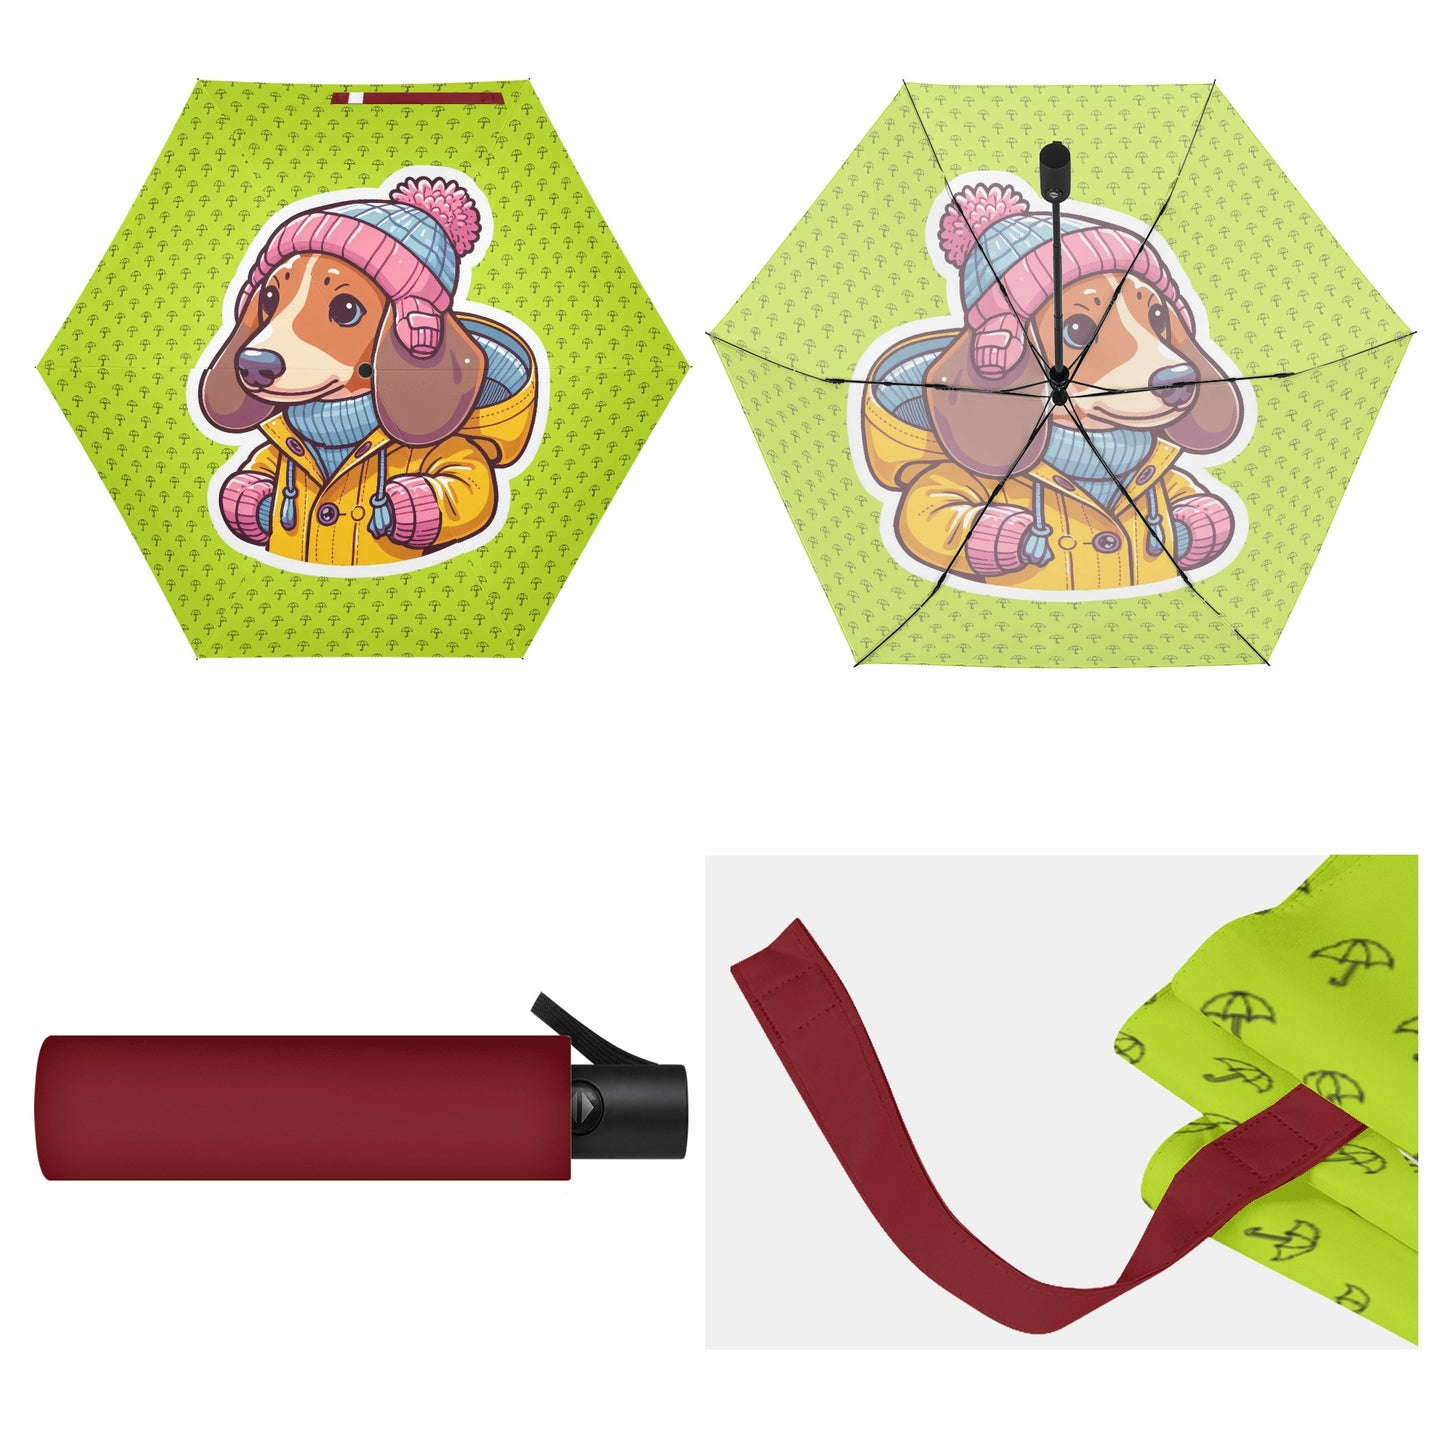 Calipso - Umbrella